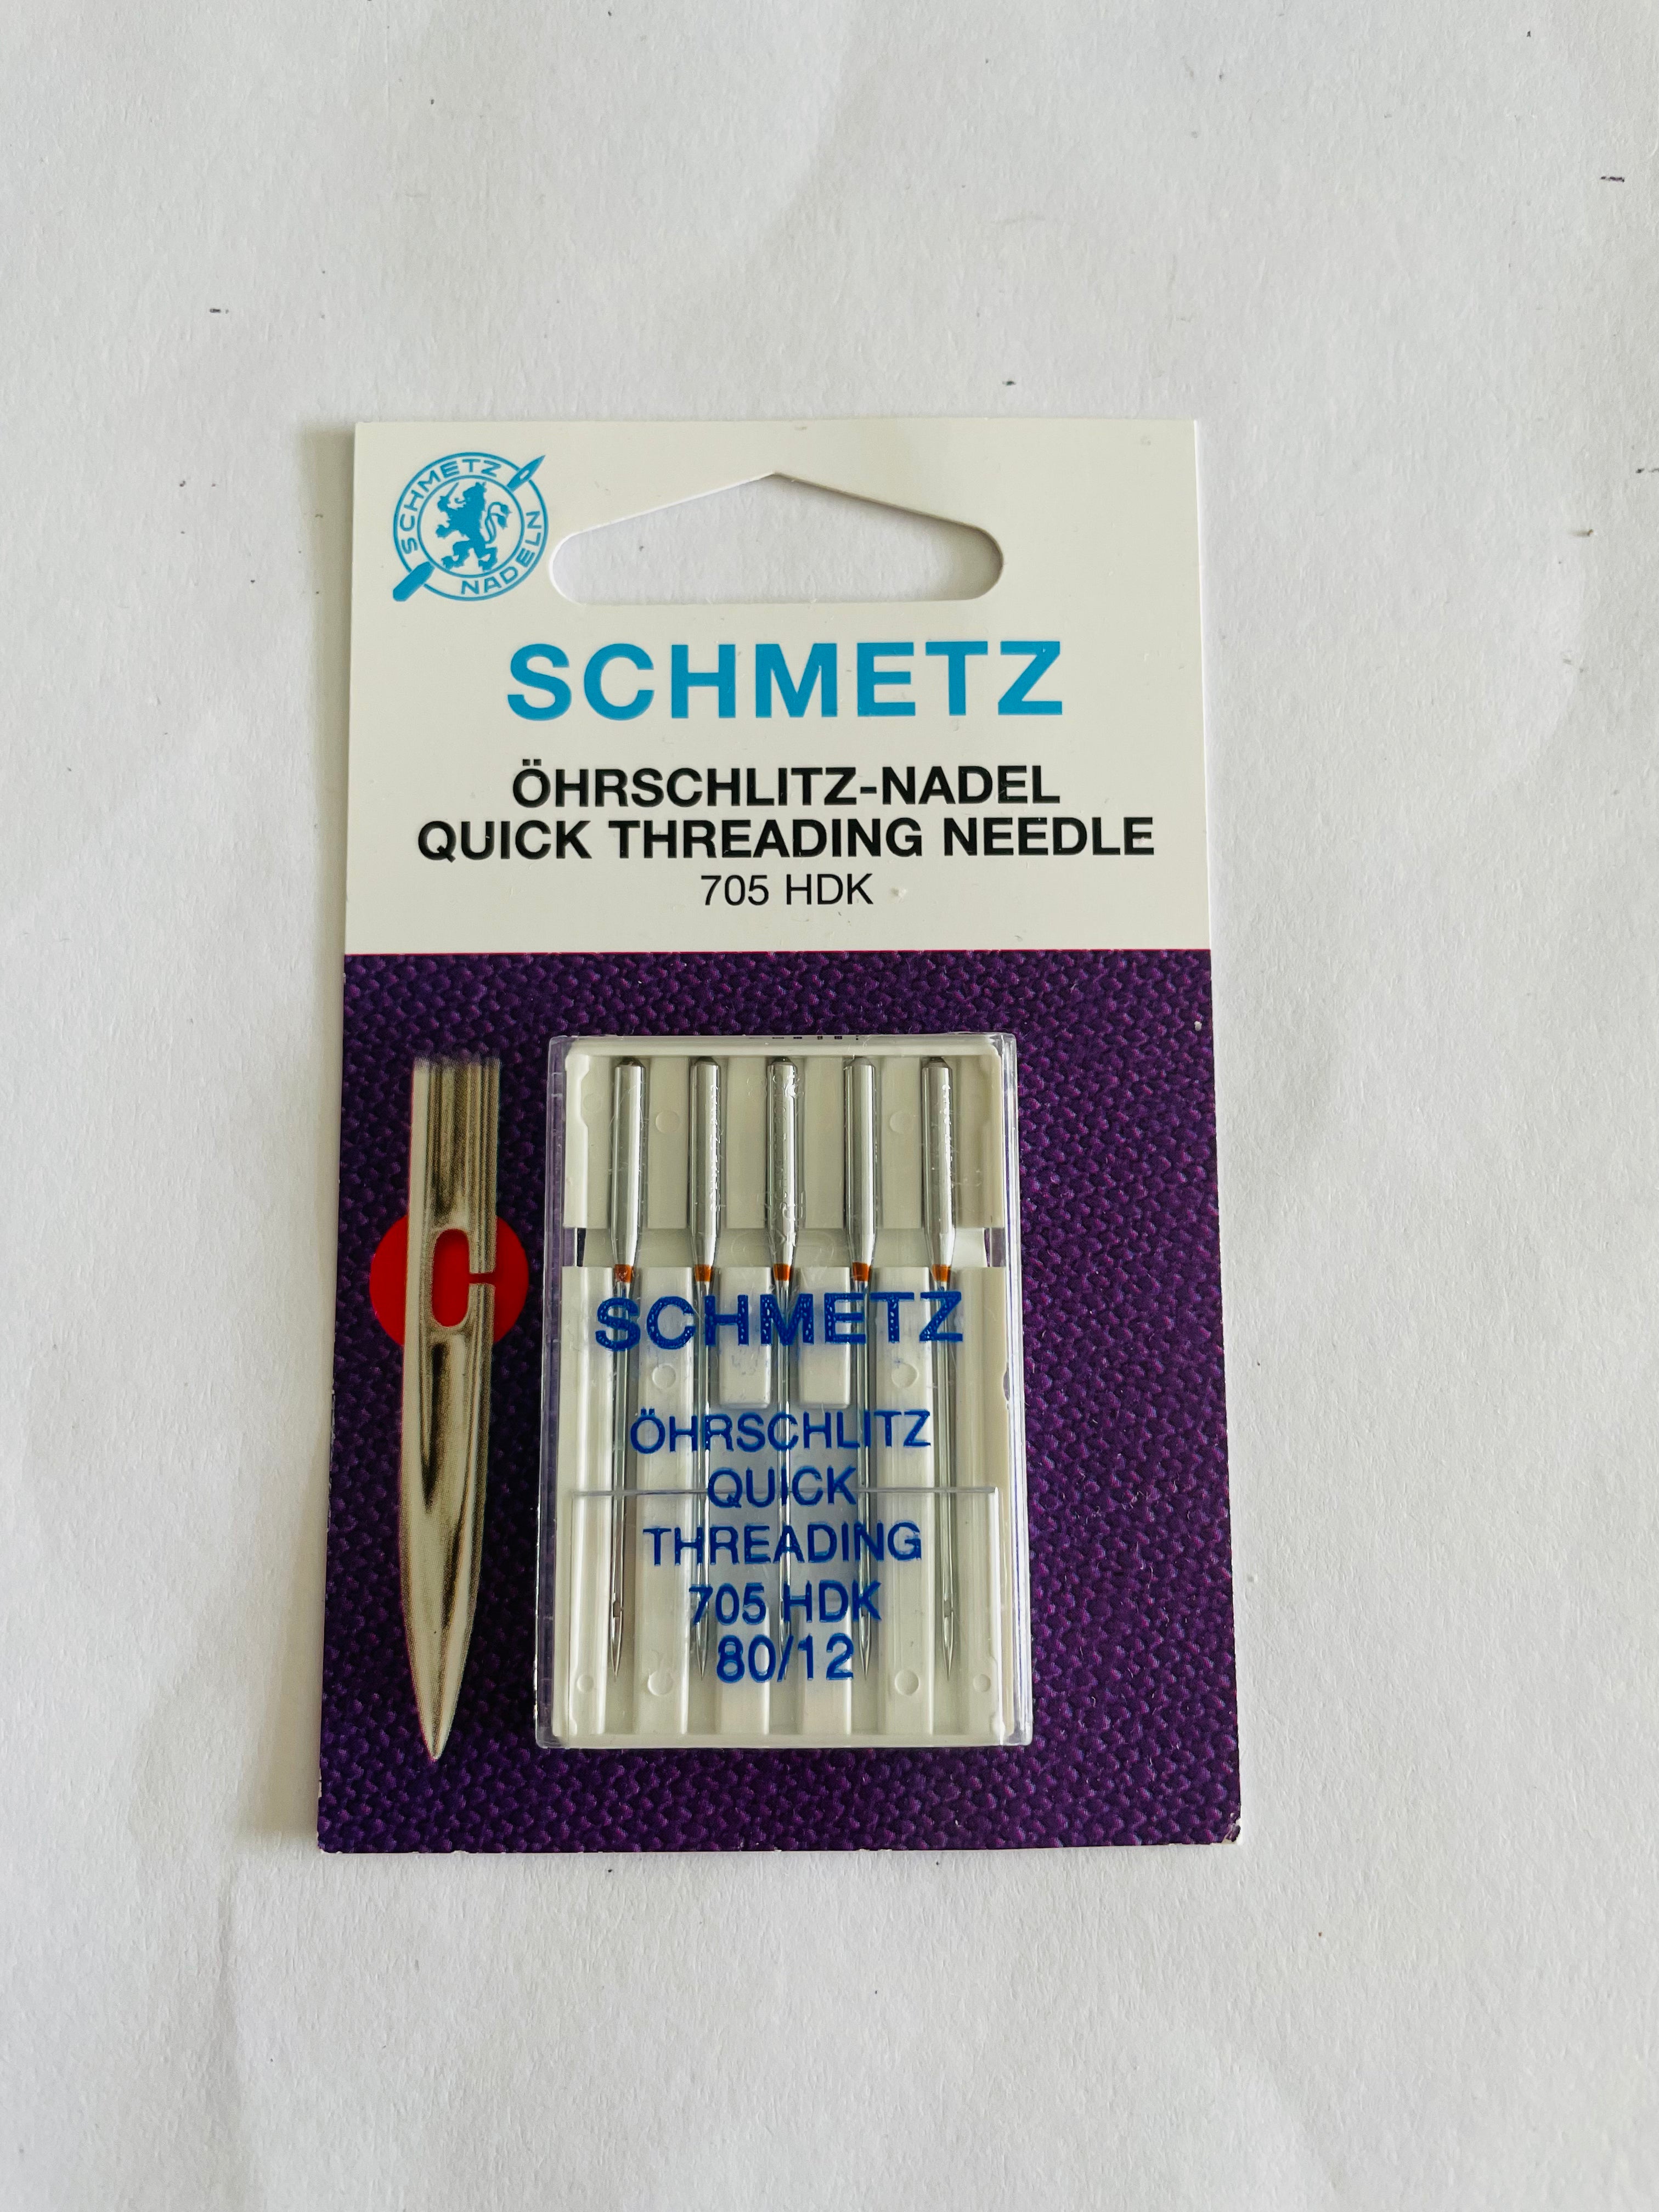 Schmetz Quick Threading Needle 80/12